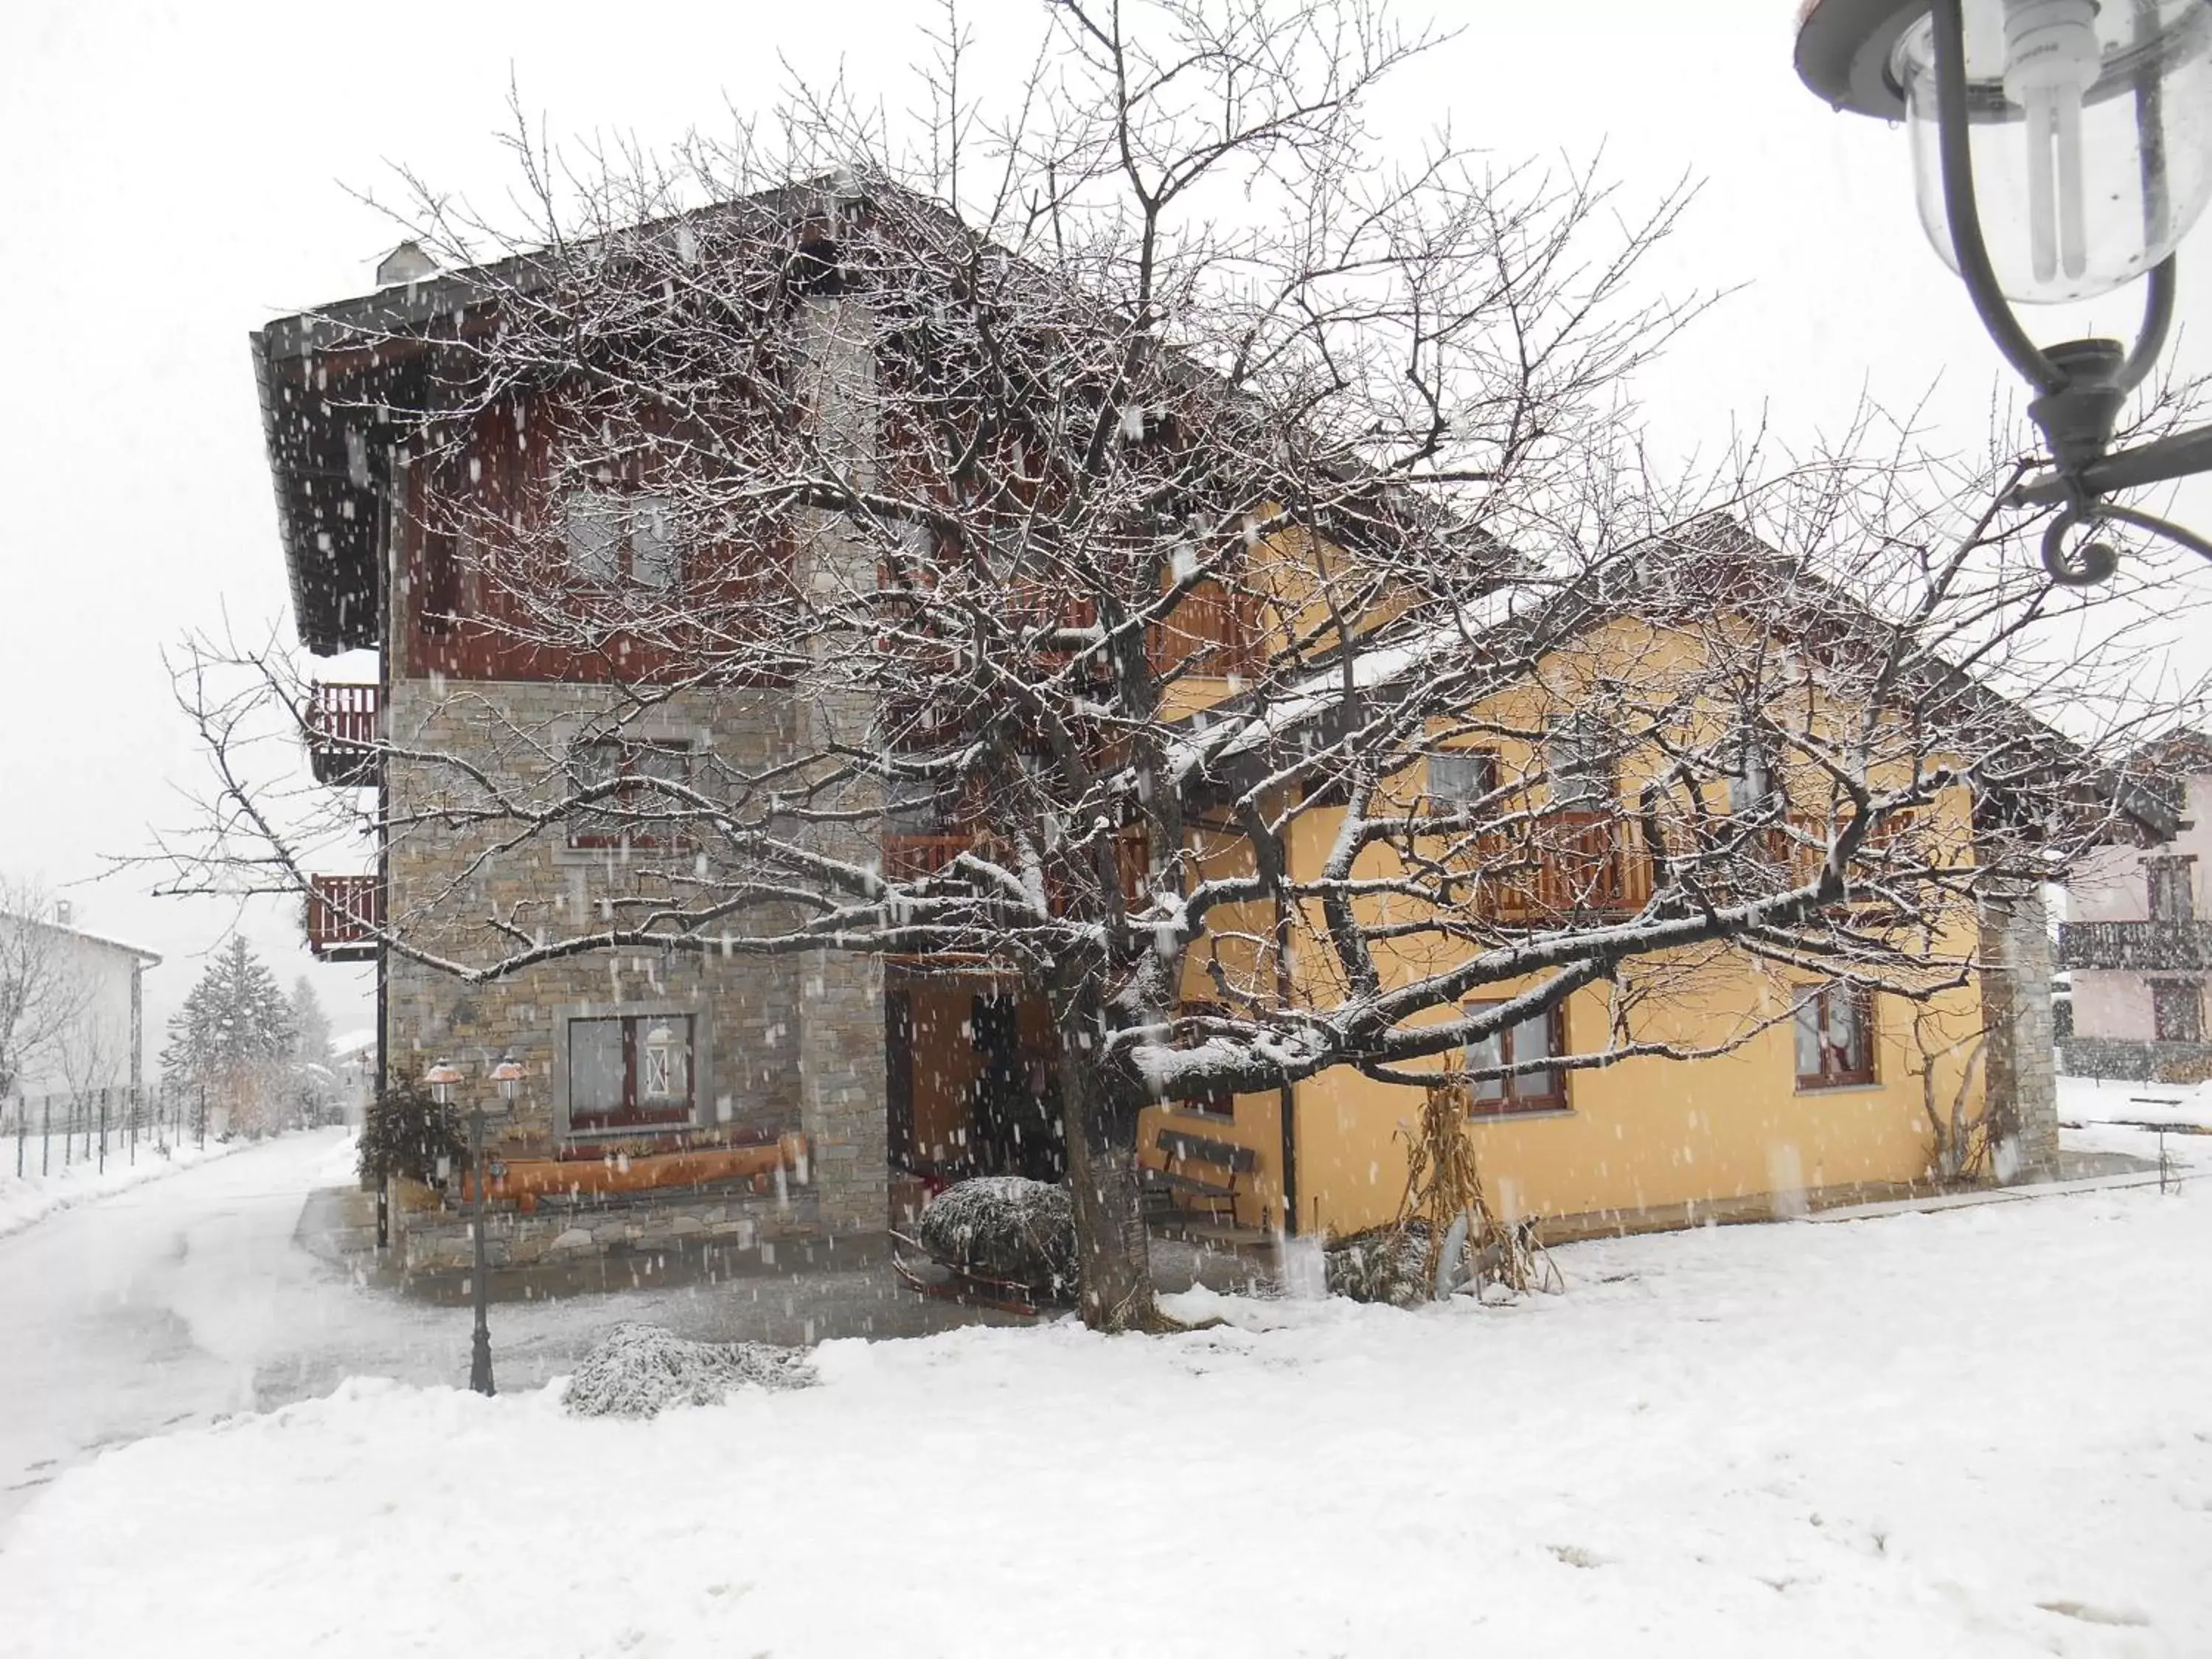 Property building, Winter in La Vigne de Papagran